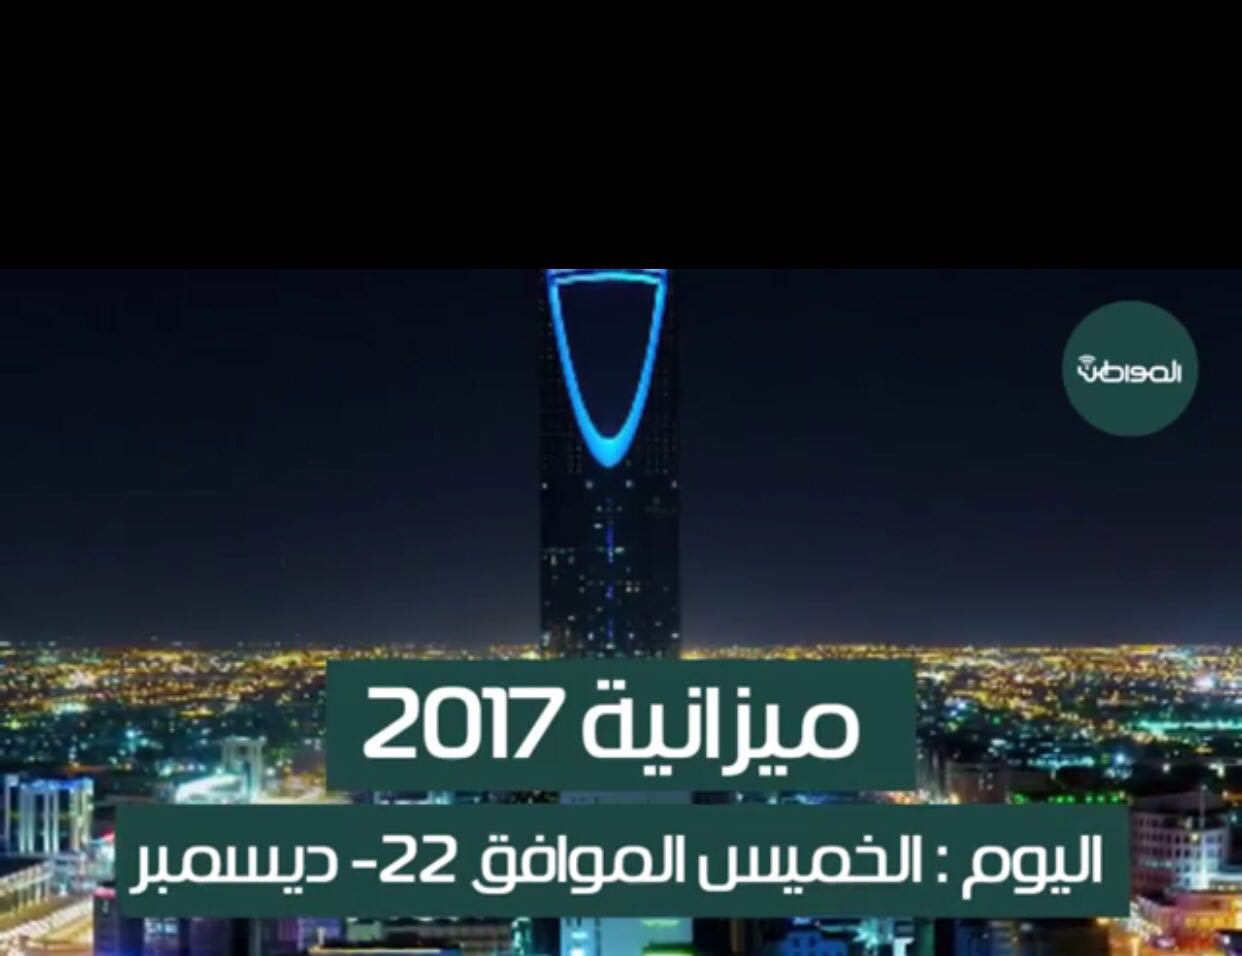 لأول مرة.. ميزانية السعودية 2017 تتضمن تفصيلاً للدَّيْن المحلي والخارجي